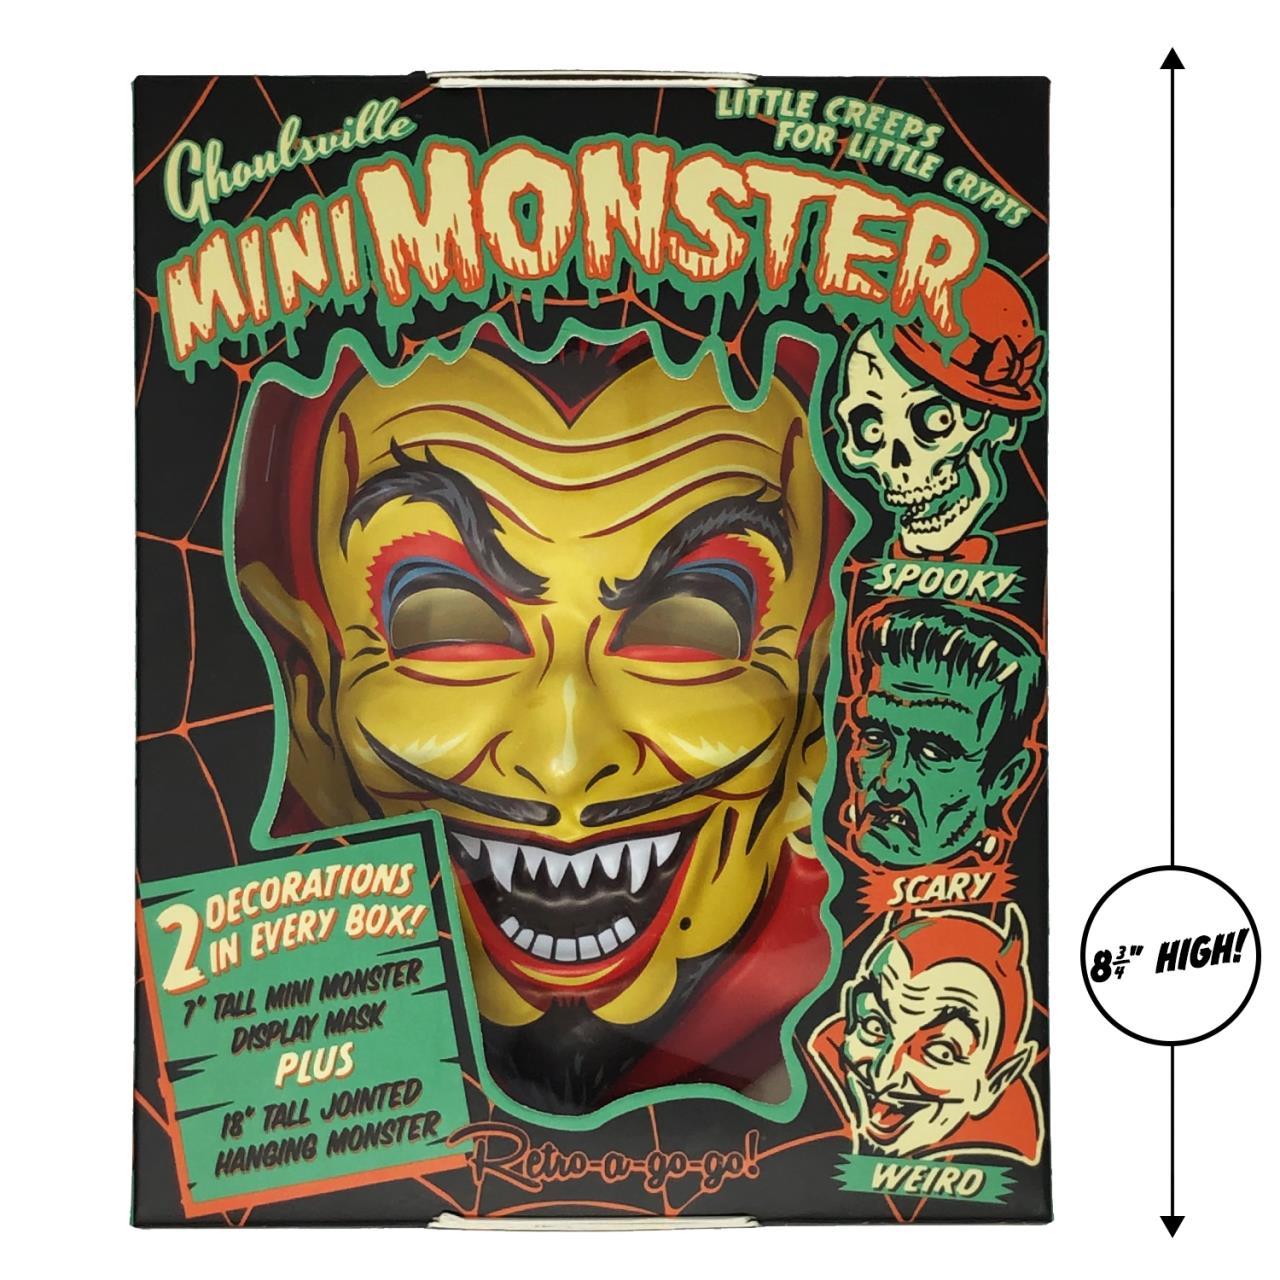 Ghoulsville Fun House Devil Mini Monster